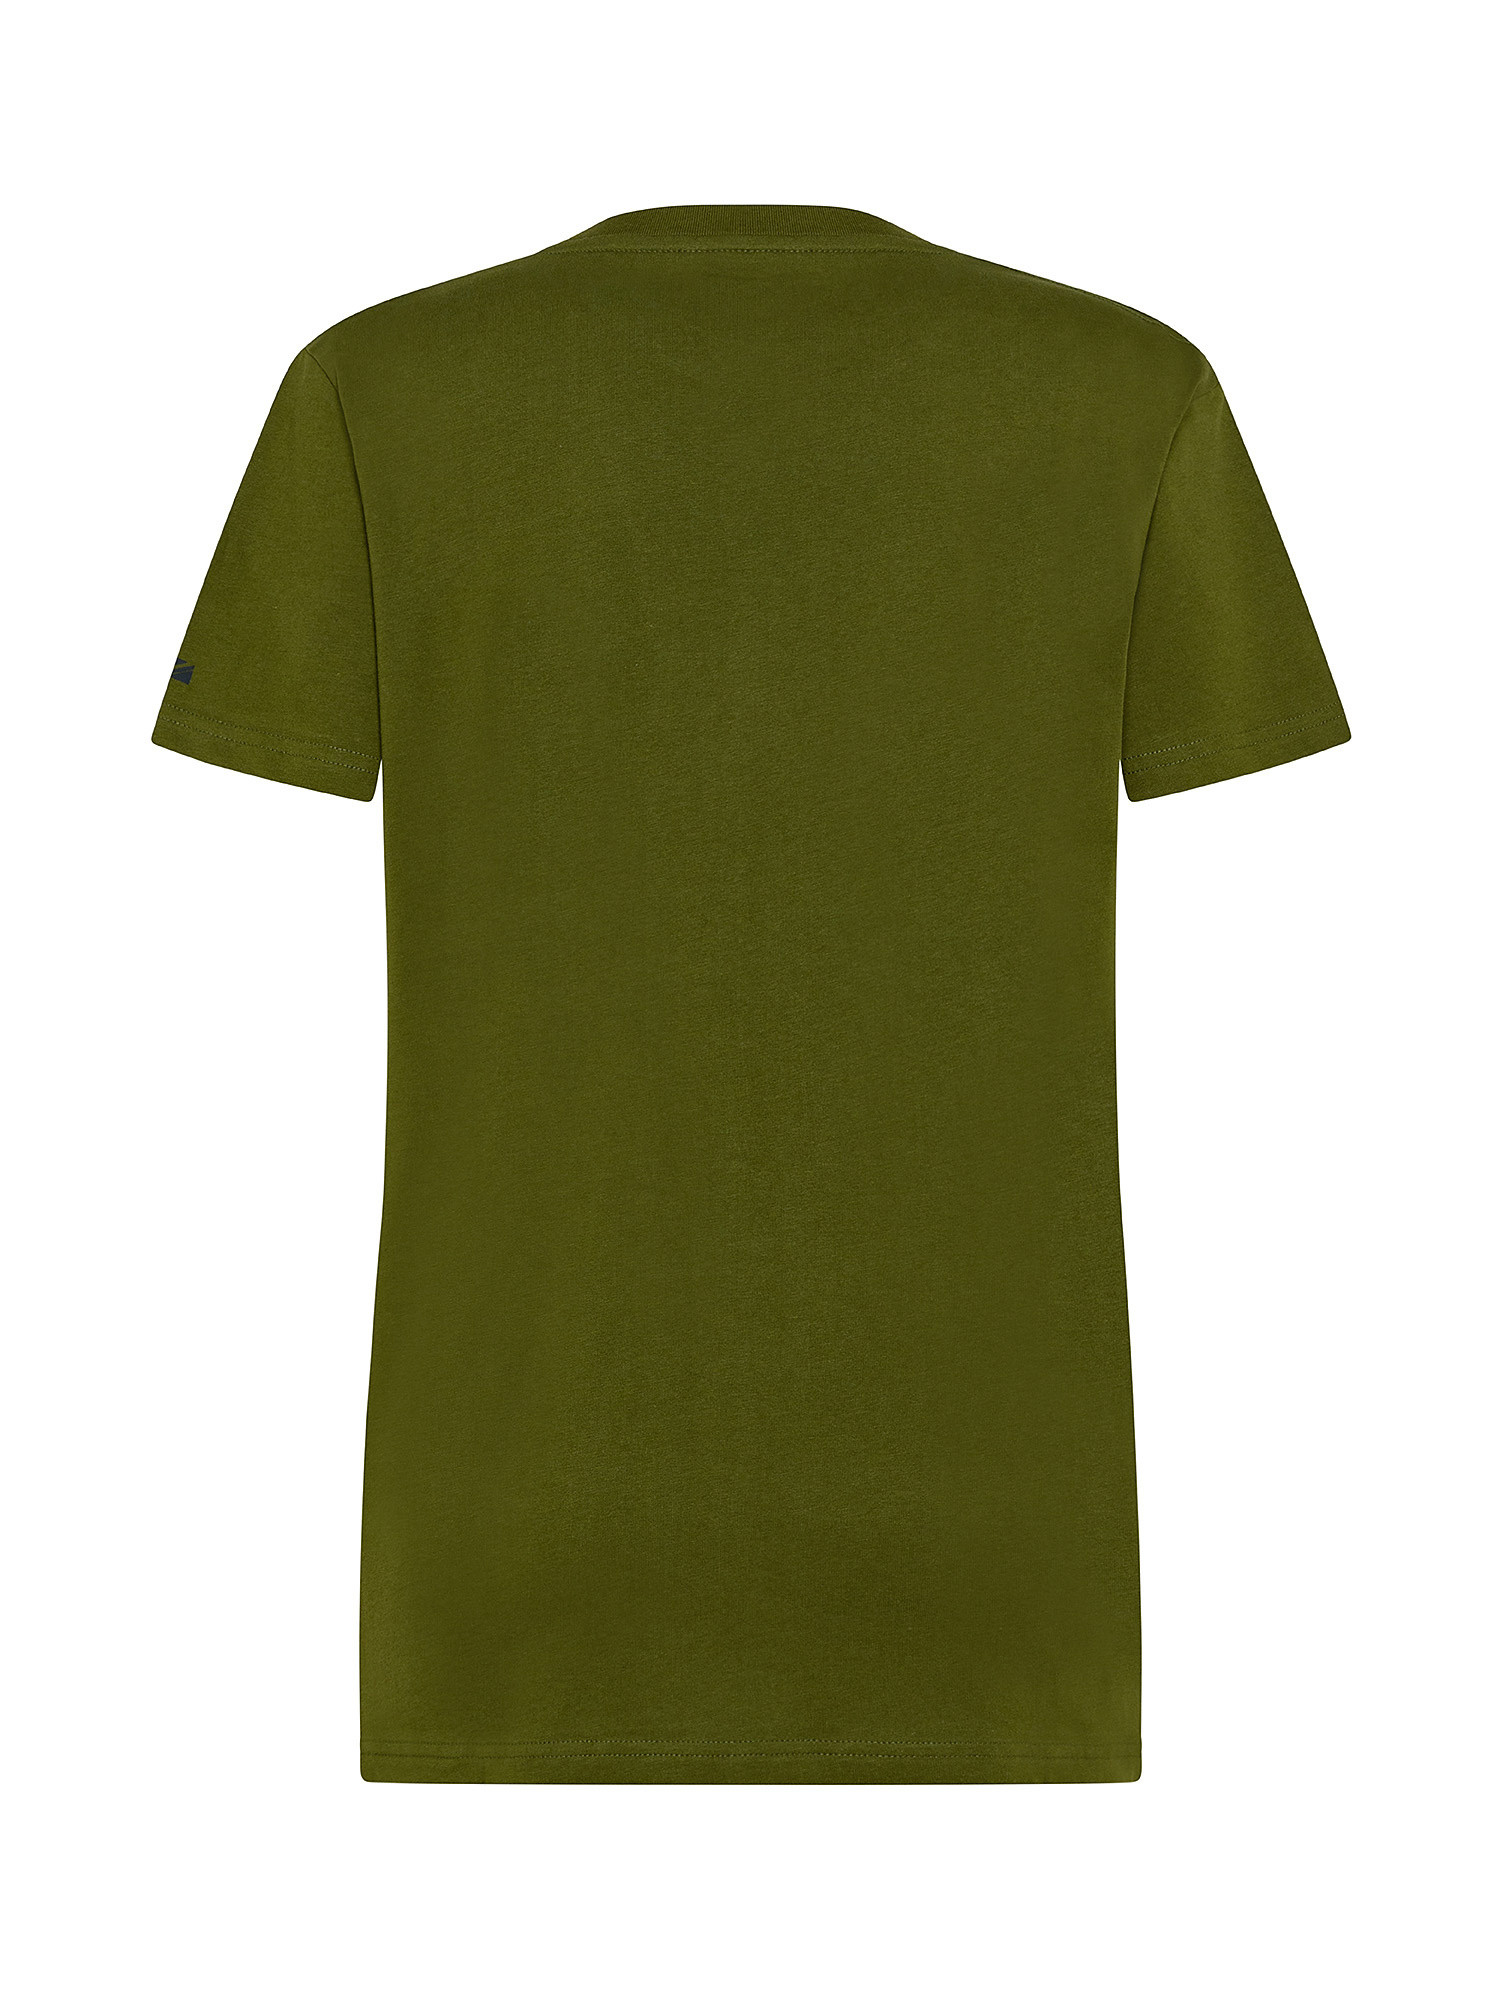 Santino cotton t-shirt, Dark Green, large image number 1